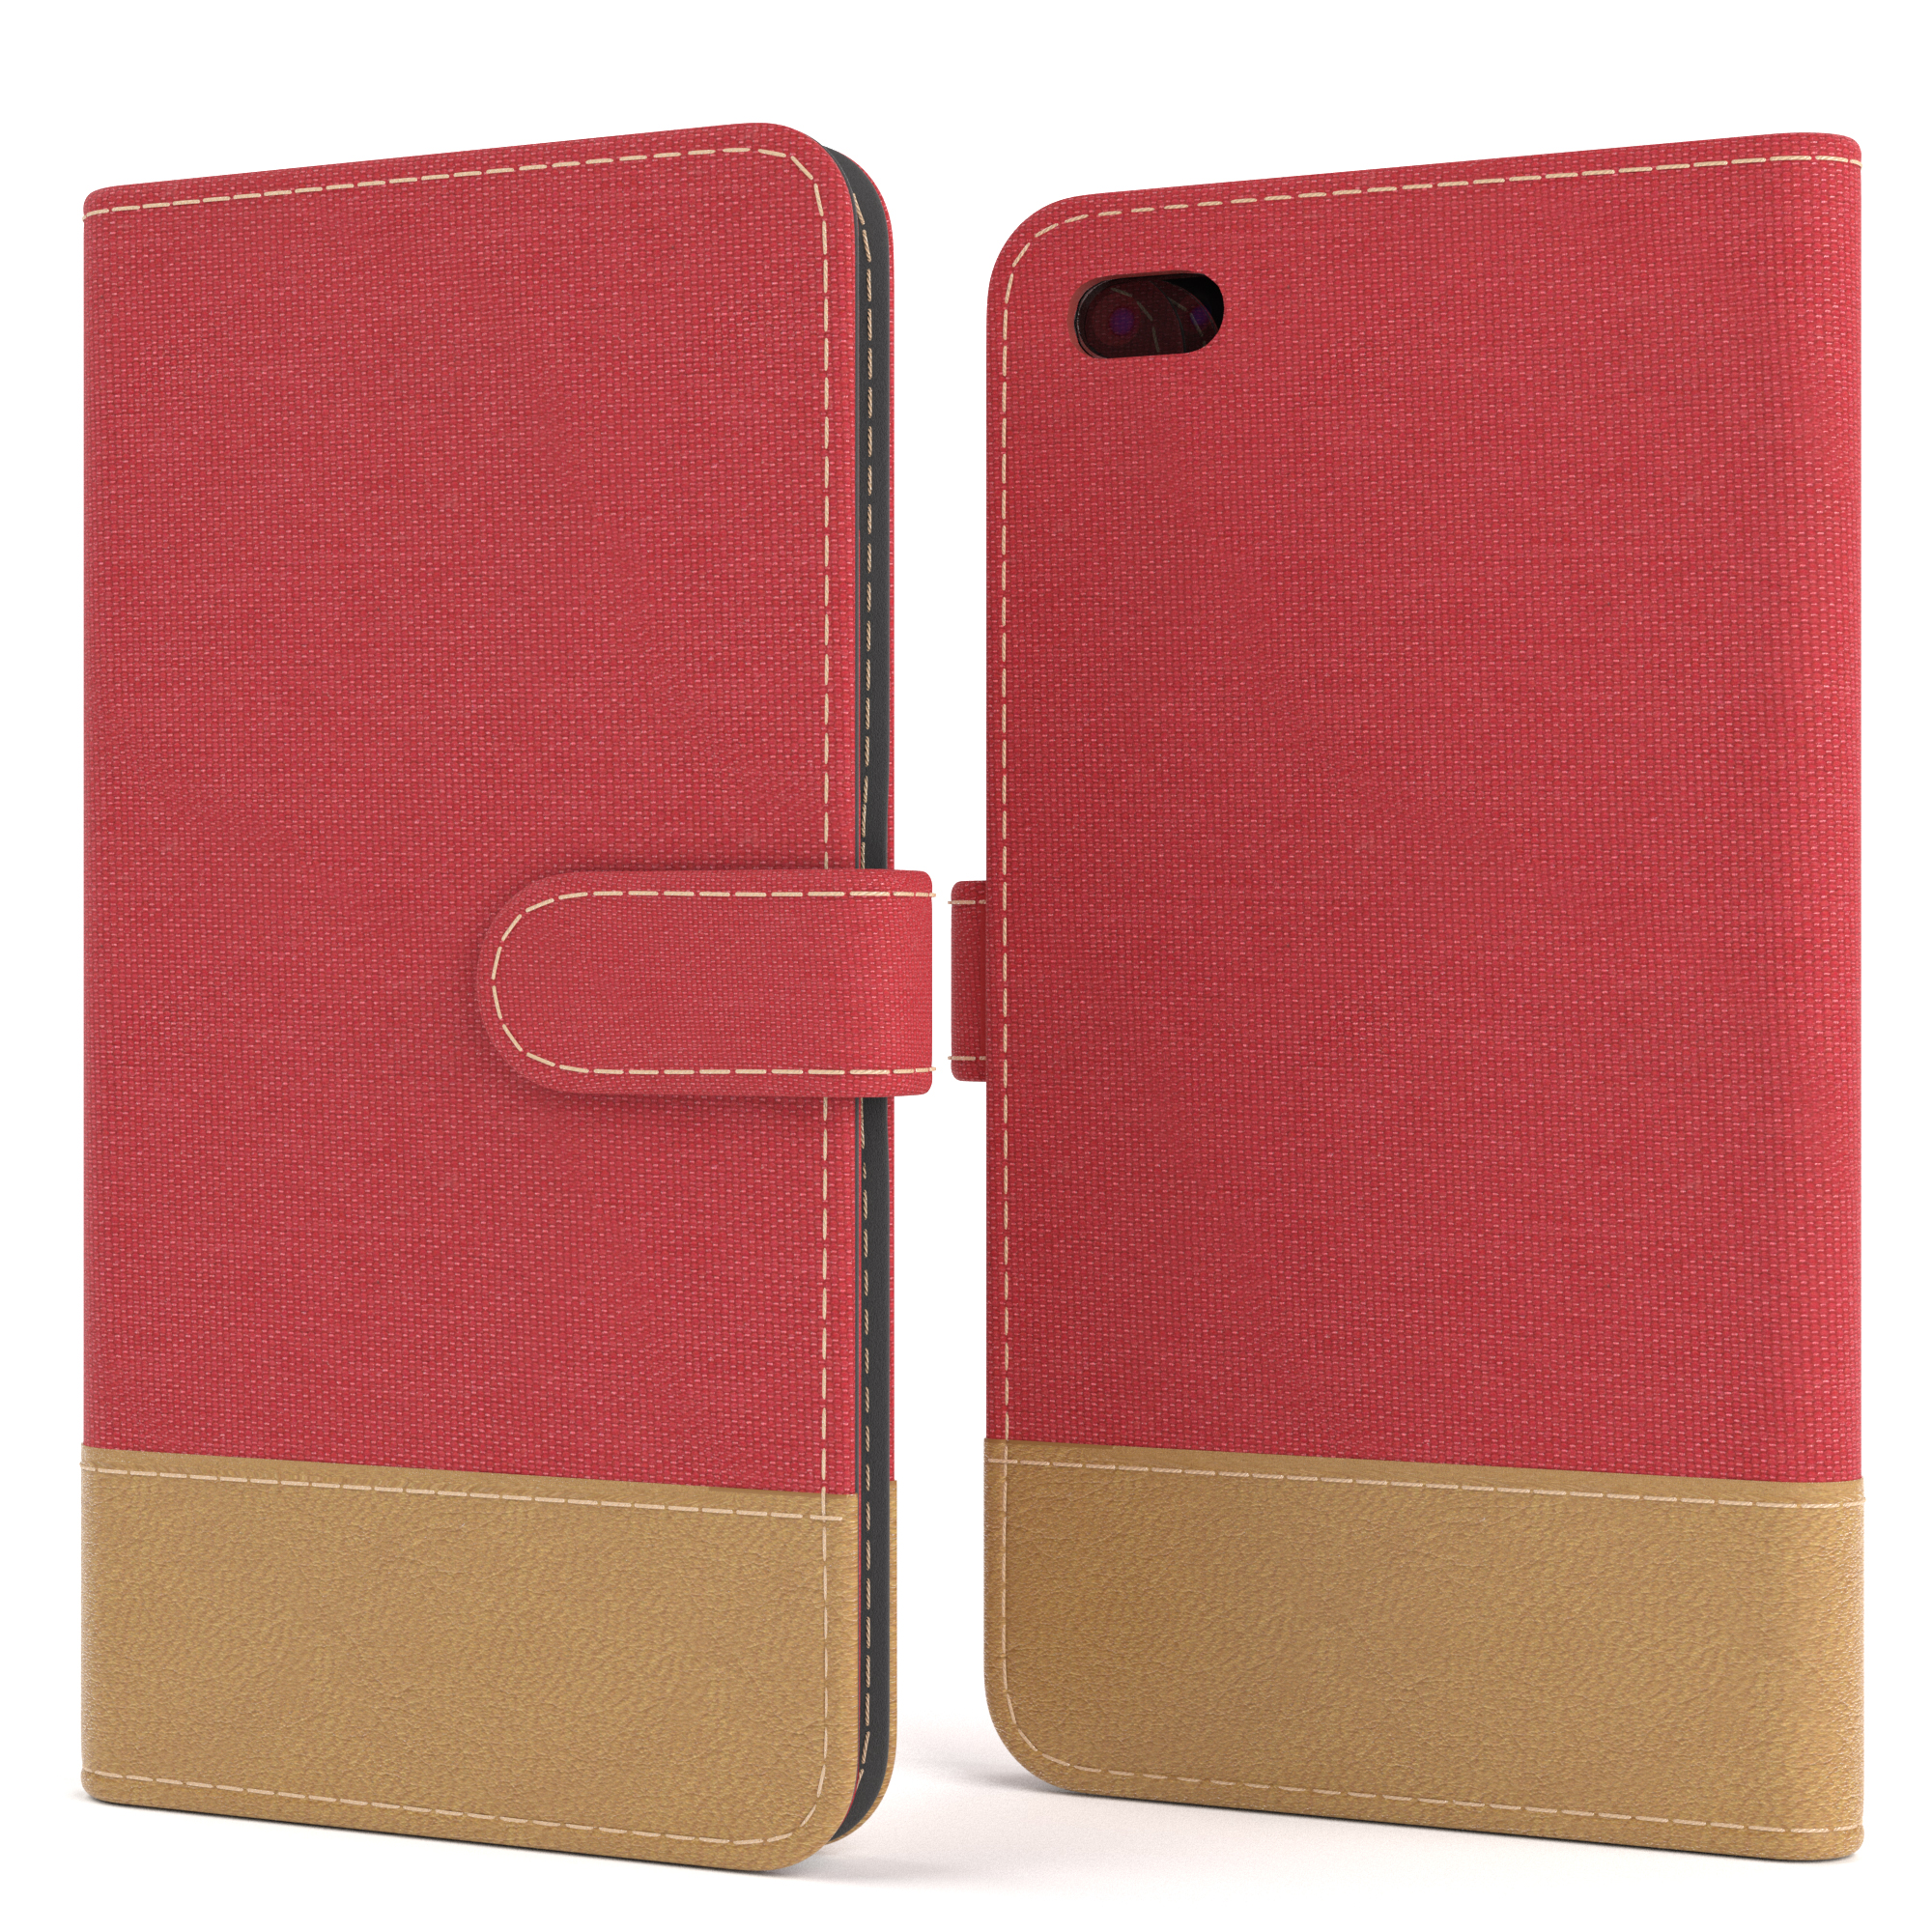 iPhone Bookstyle / 7 CASE mit Plus Plus, Rot Apple, 8 Klapphülle EAZY Jeans Bookcover, Kartenfach,